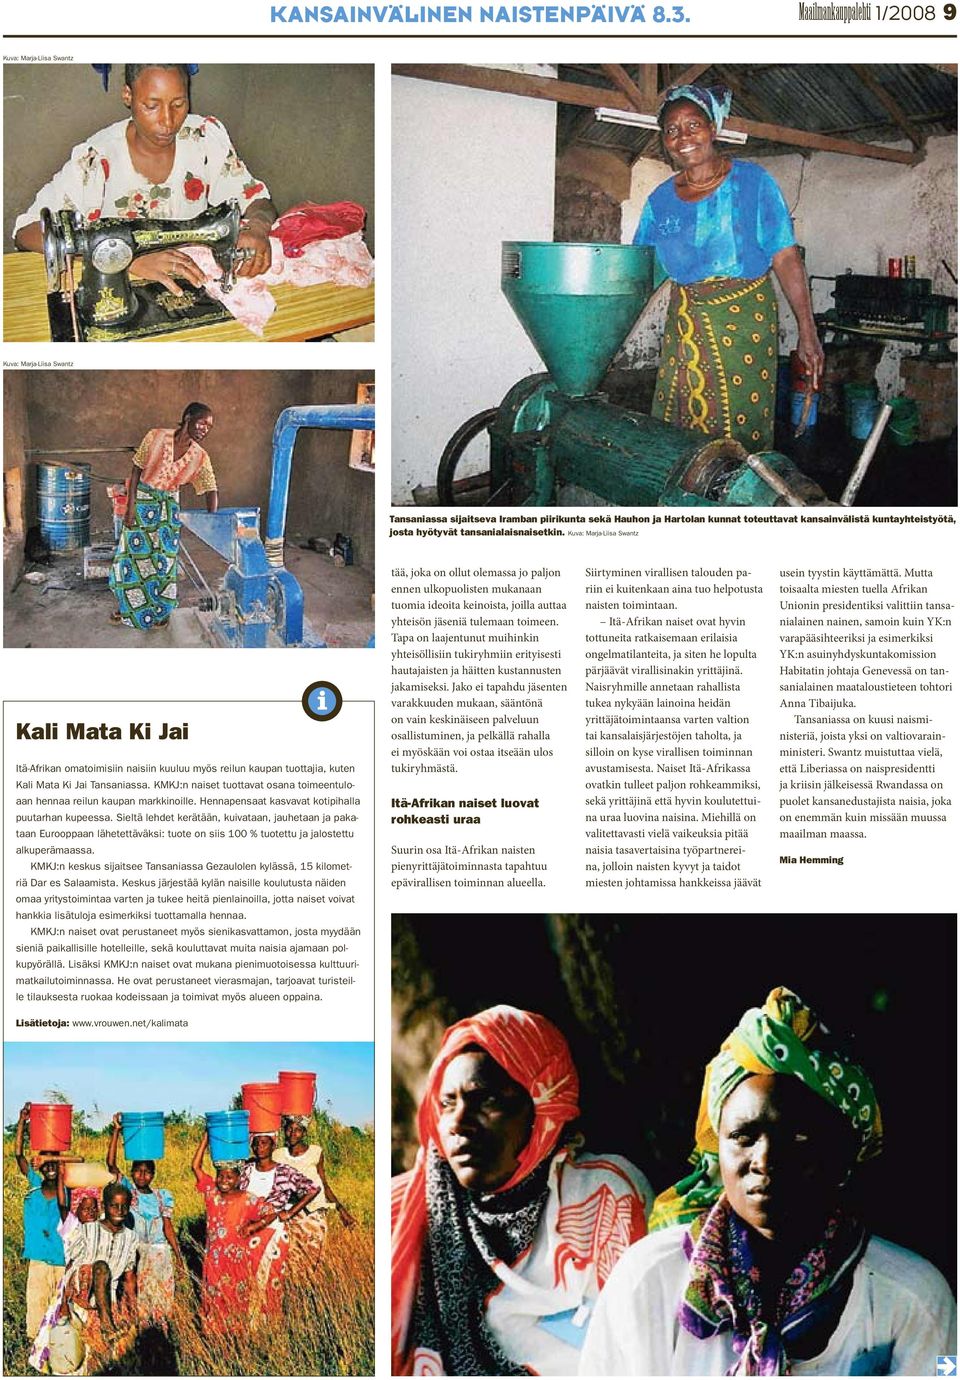 josta hyötyvät tansanialaisnaisetkin. Kuva: Marja-Liisa Swantz Kali Mata Ki Jai Itä-Afrikan omatoimisiin naisiin kuuluu myös reilun kaupan tuottajia, kuten Kali Mata Ki Jai Tansaniassa.